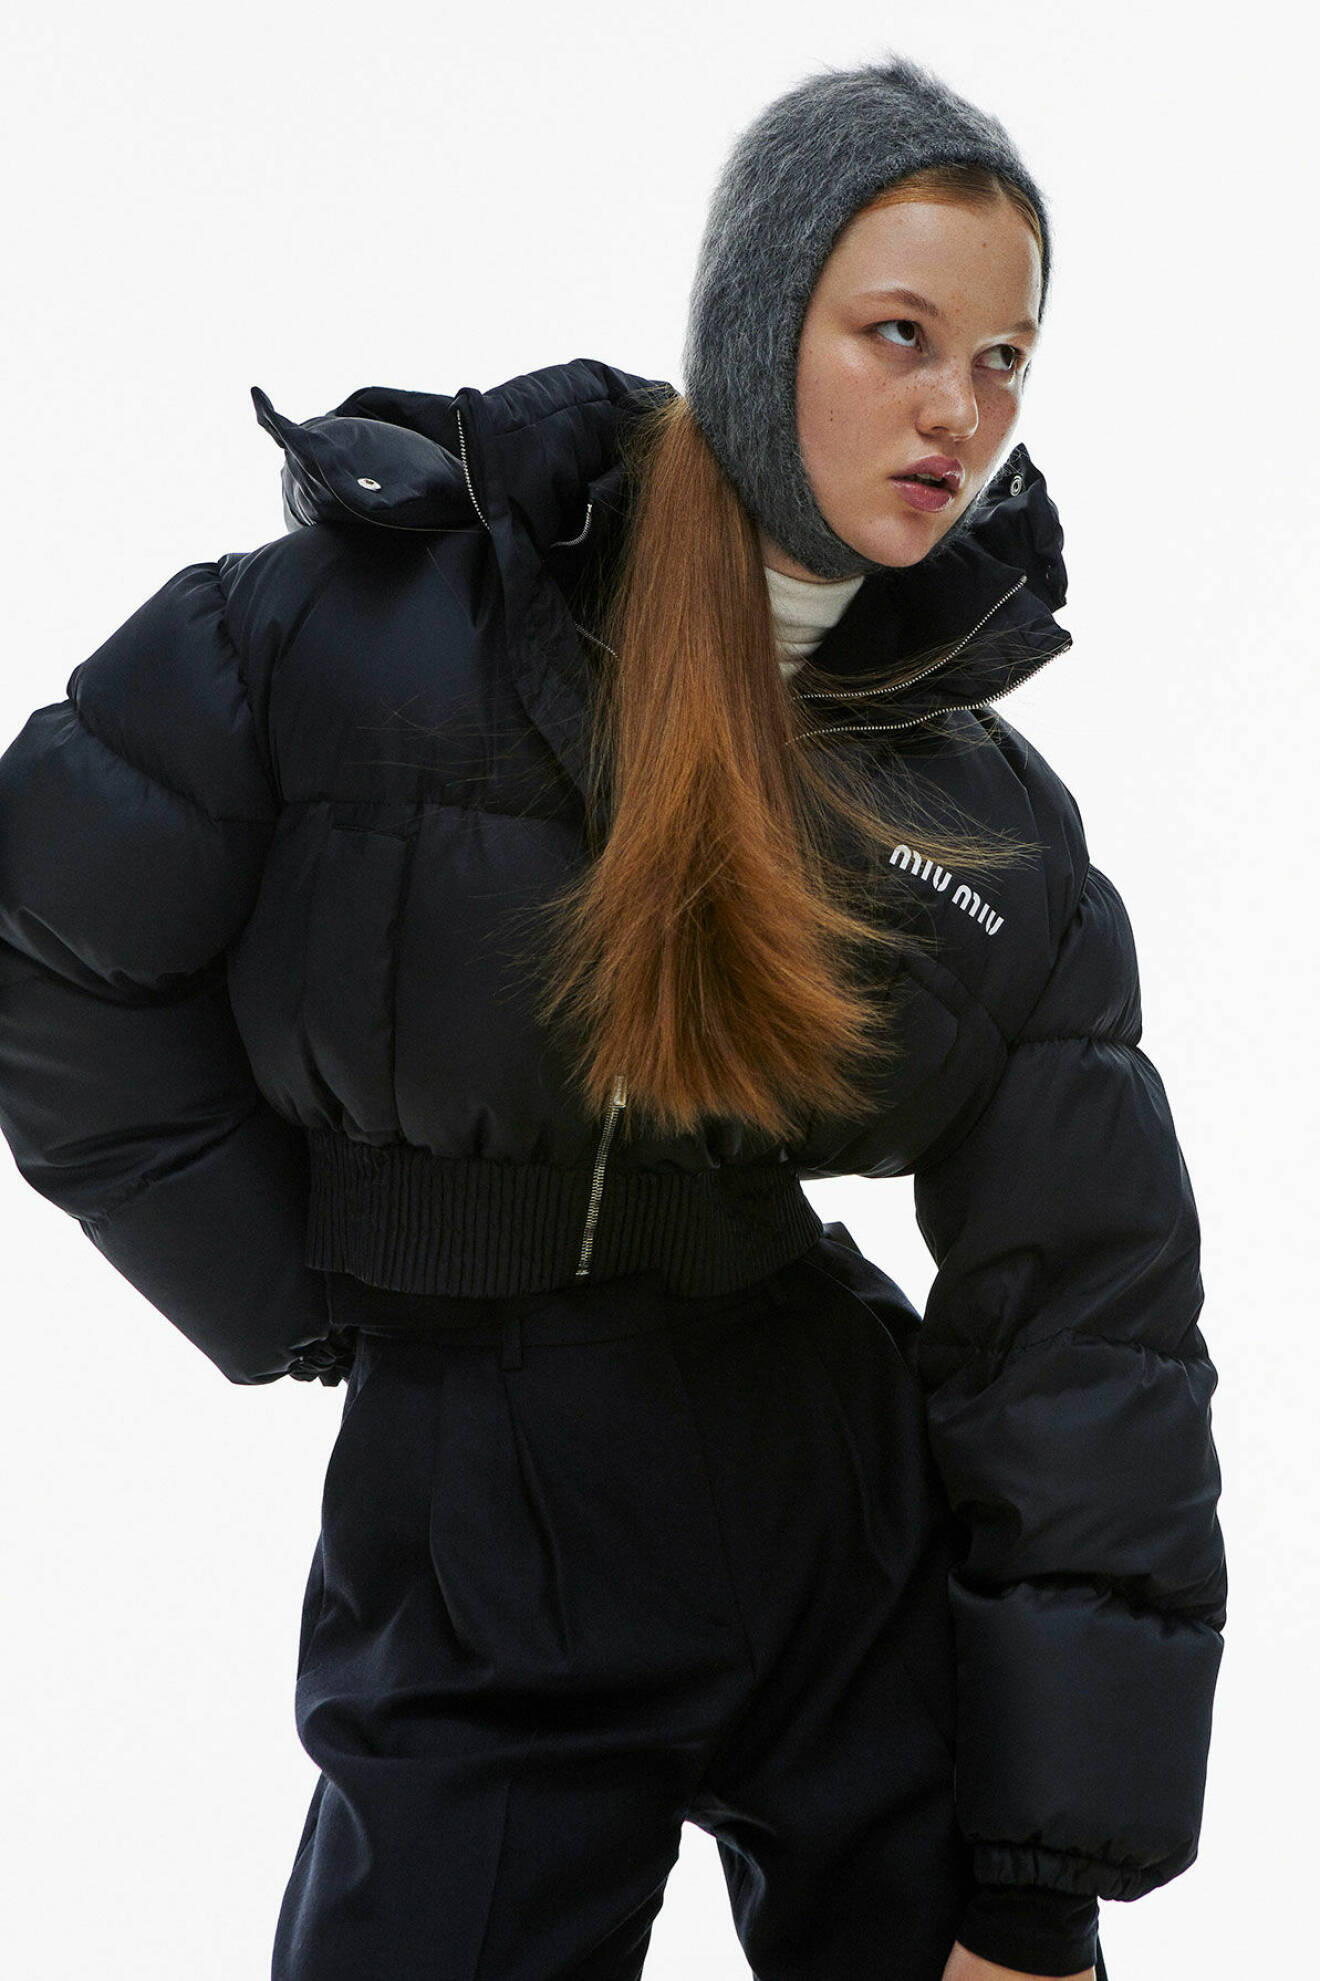 Modellen bär en svart, kort vinterjacka med en grå balaklava